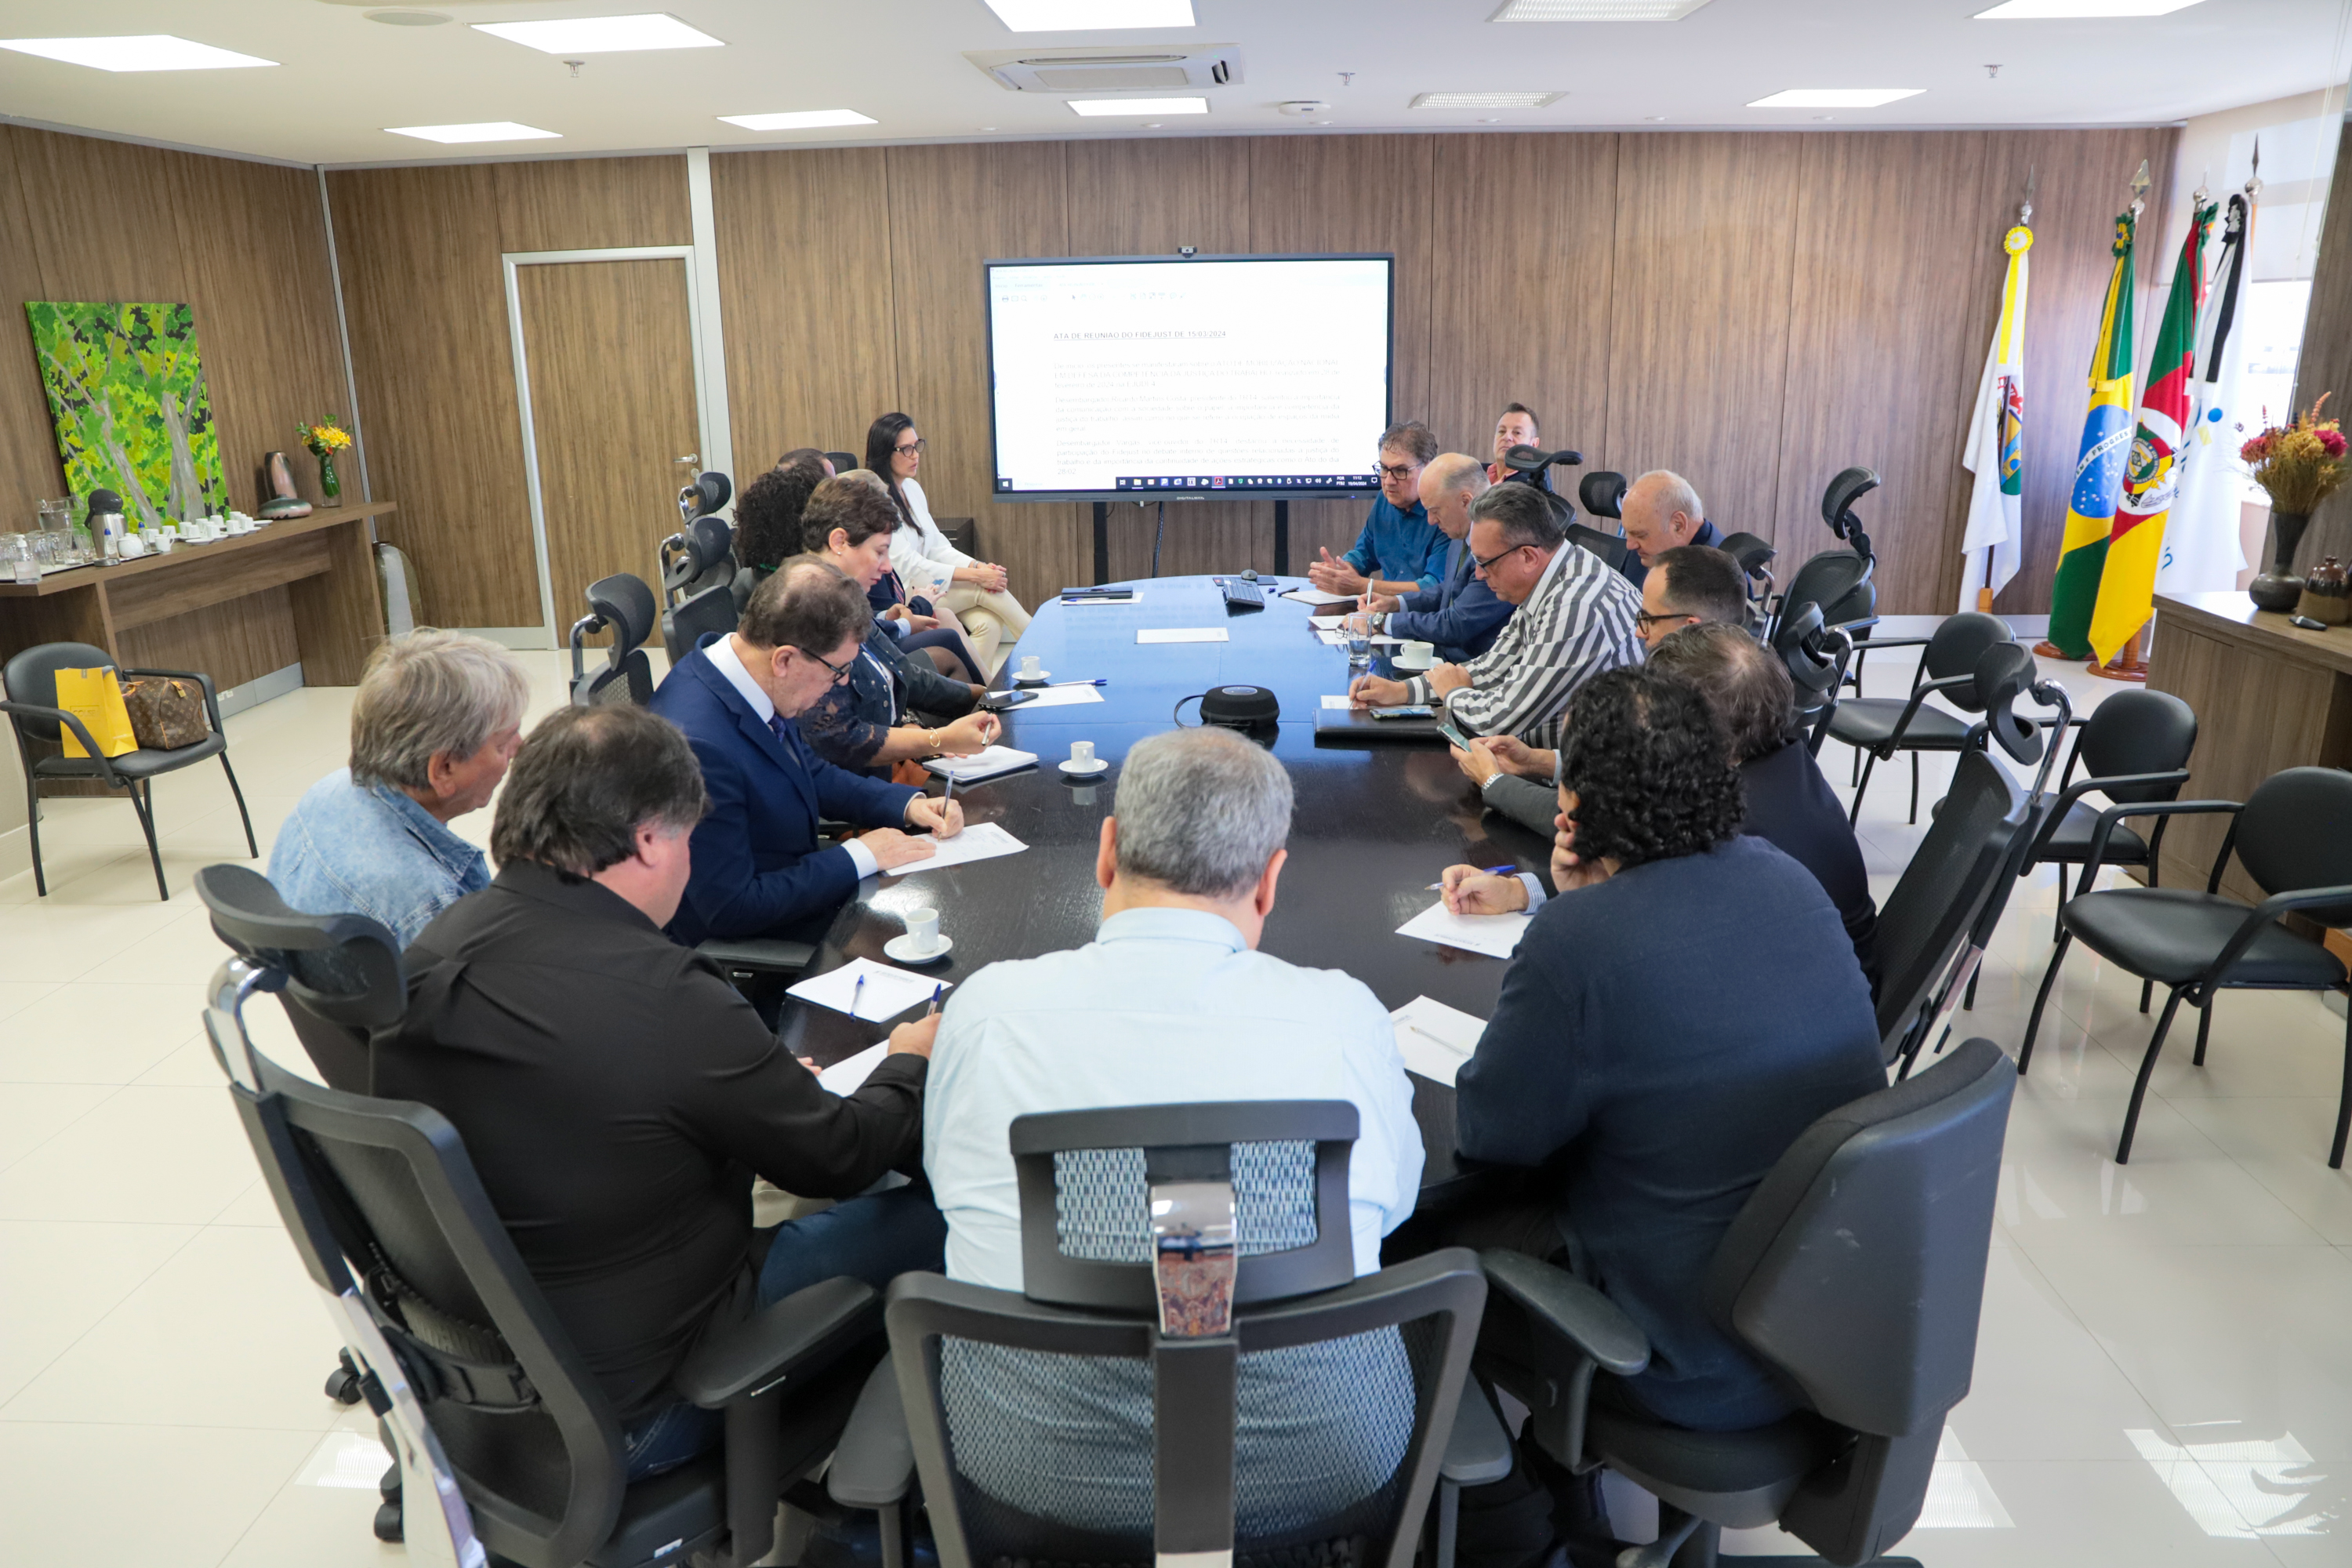 Foto da reunião, mostrando os participantes à mesa